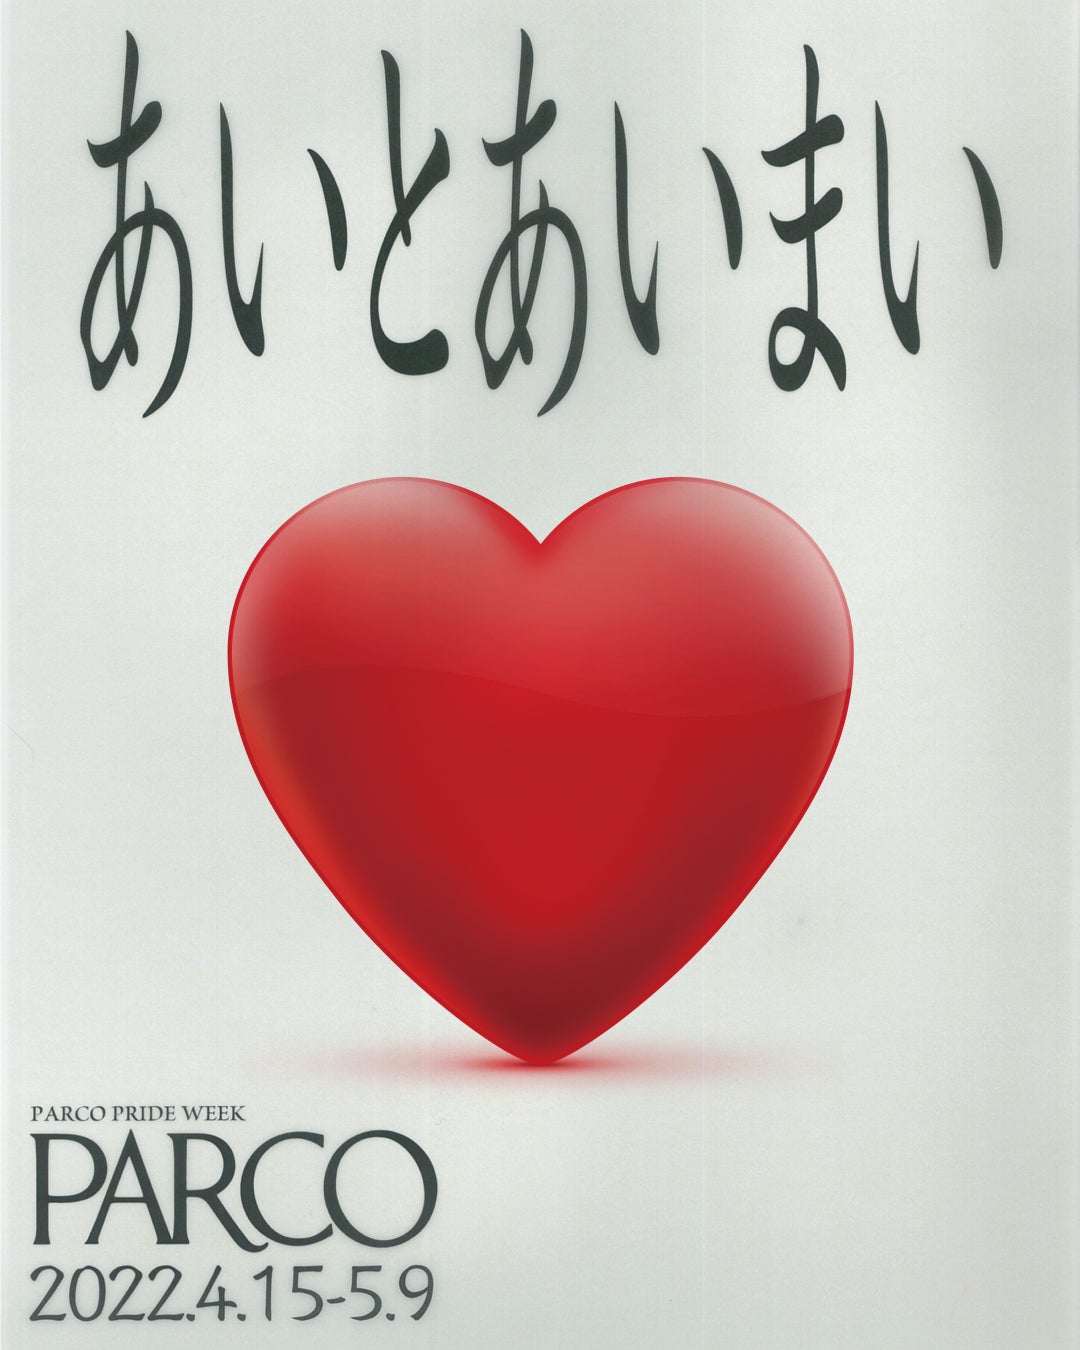 PARCO PRIDE WEEK『あいとあいまい』開催 ーいろいろな個性をもったカルチャーをパルコは応援しますー